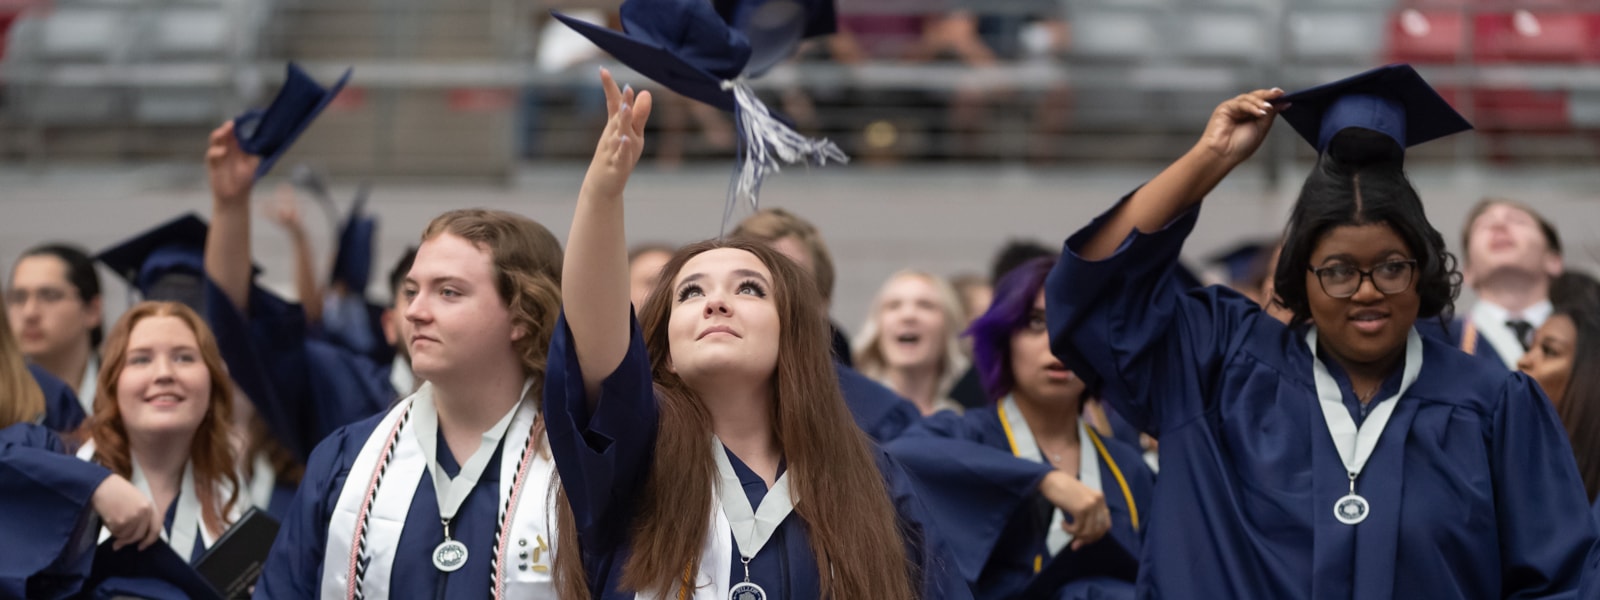 High school graduates throwing their caps in the air